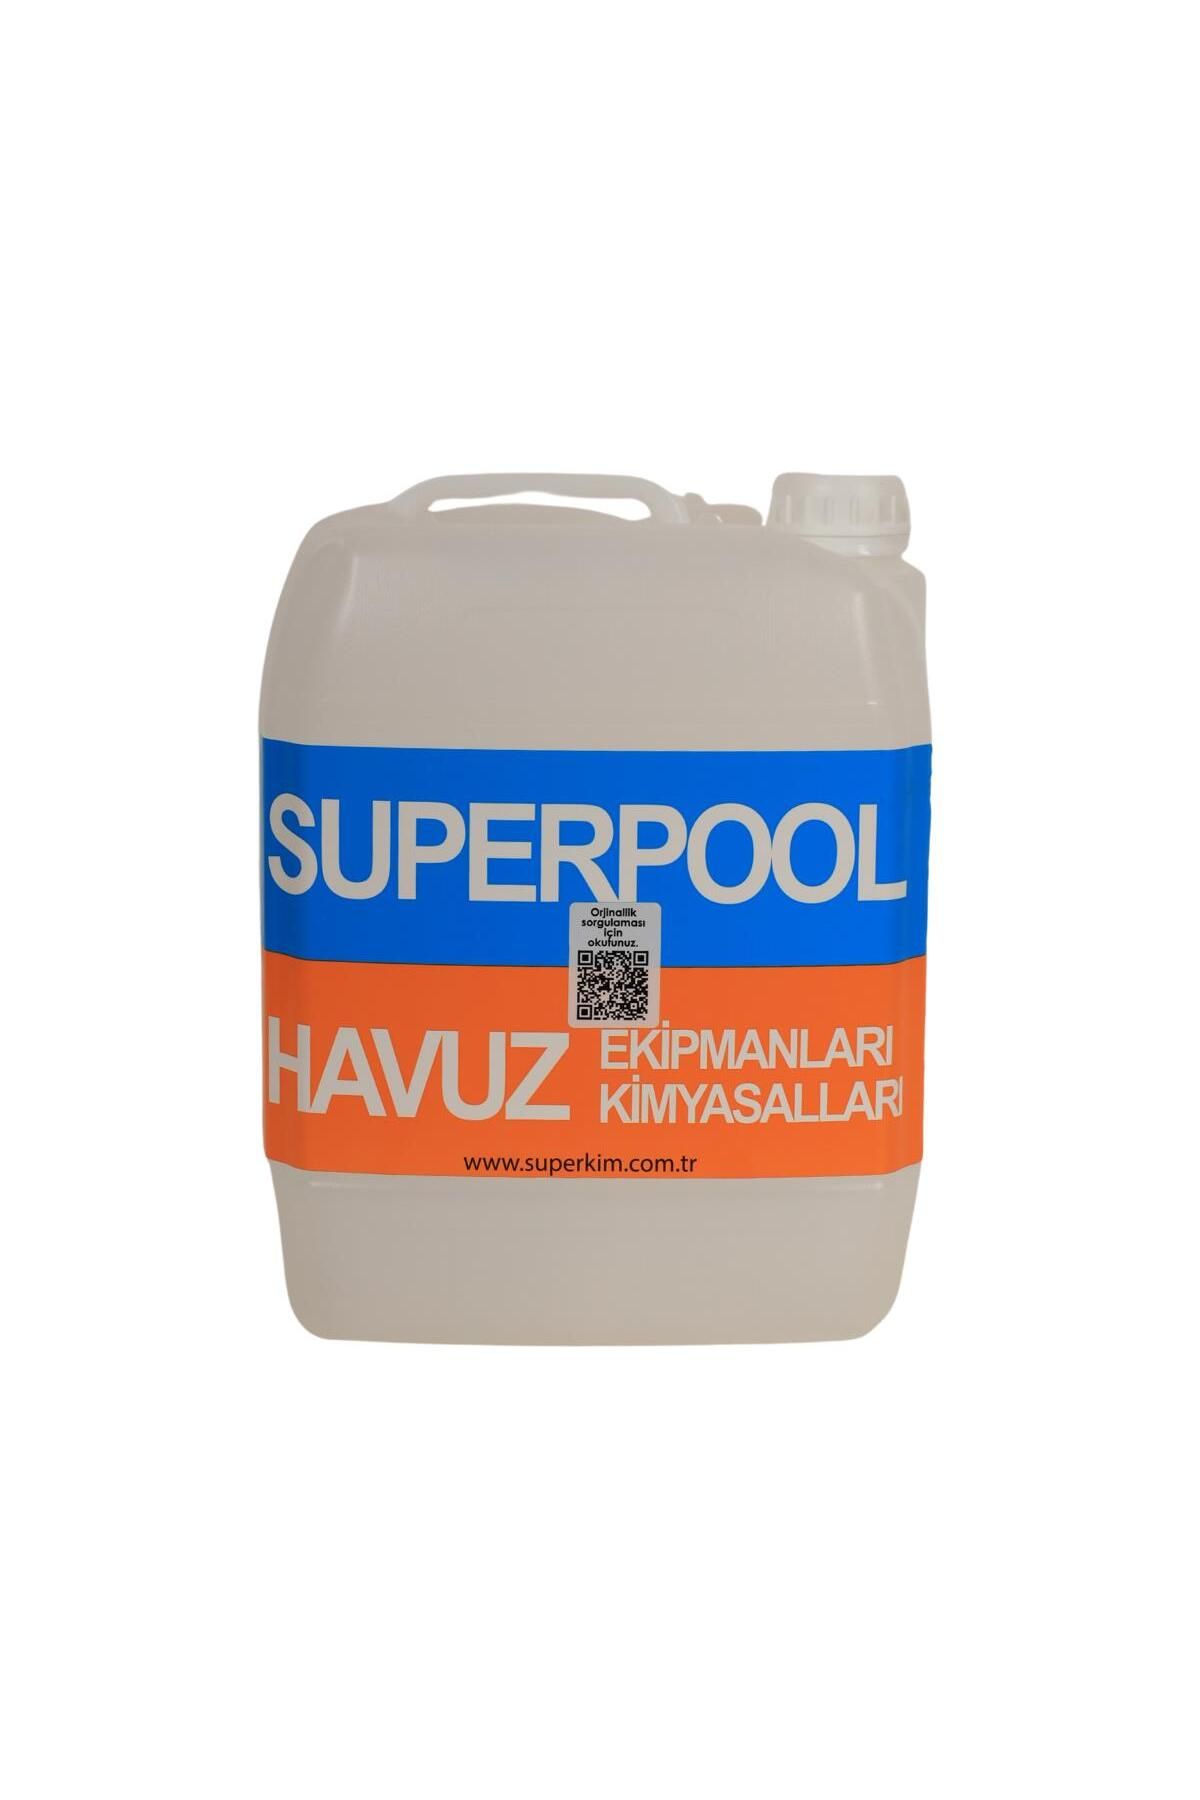 SPP SUPERPOOL Sıvı Yosun Önleyici ve Havuz Yosun Giderici Havuz Kimyasalı 5 Kg